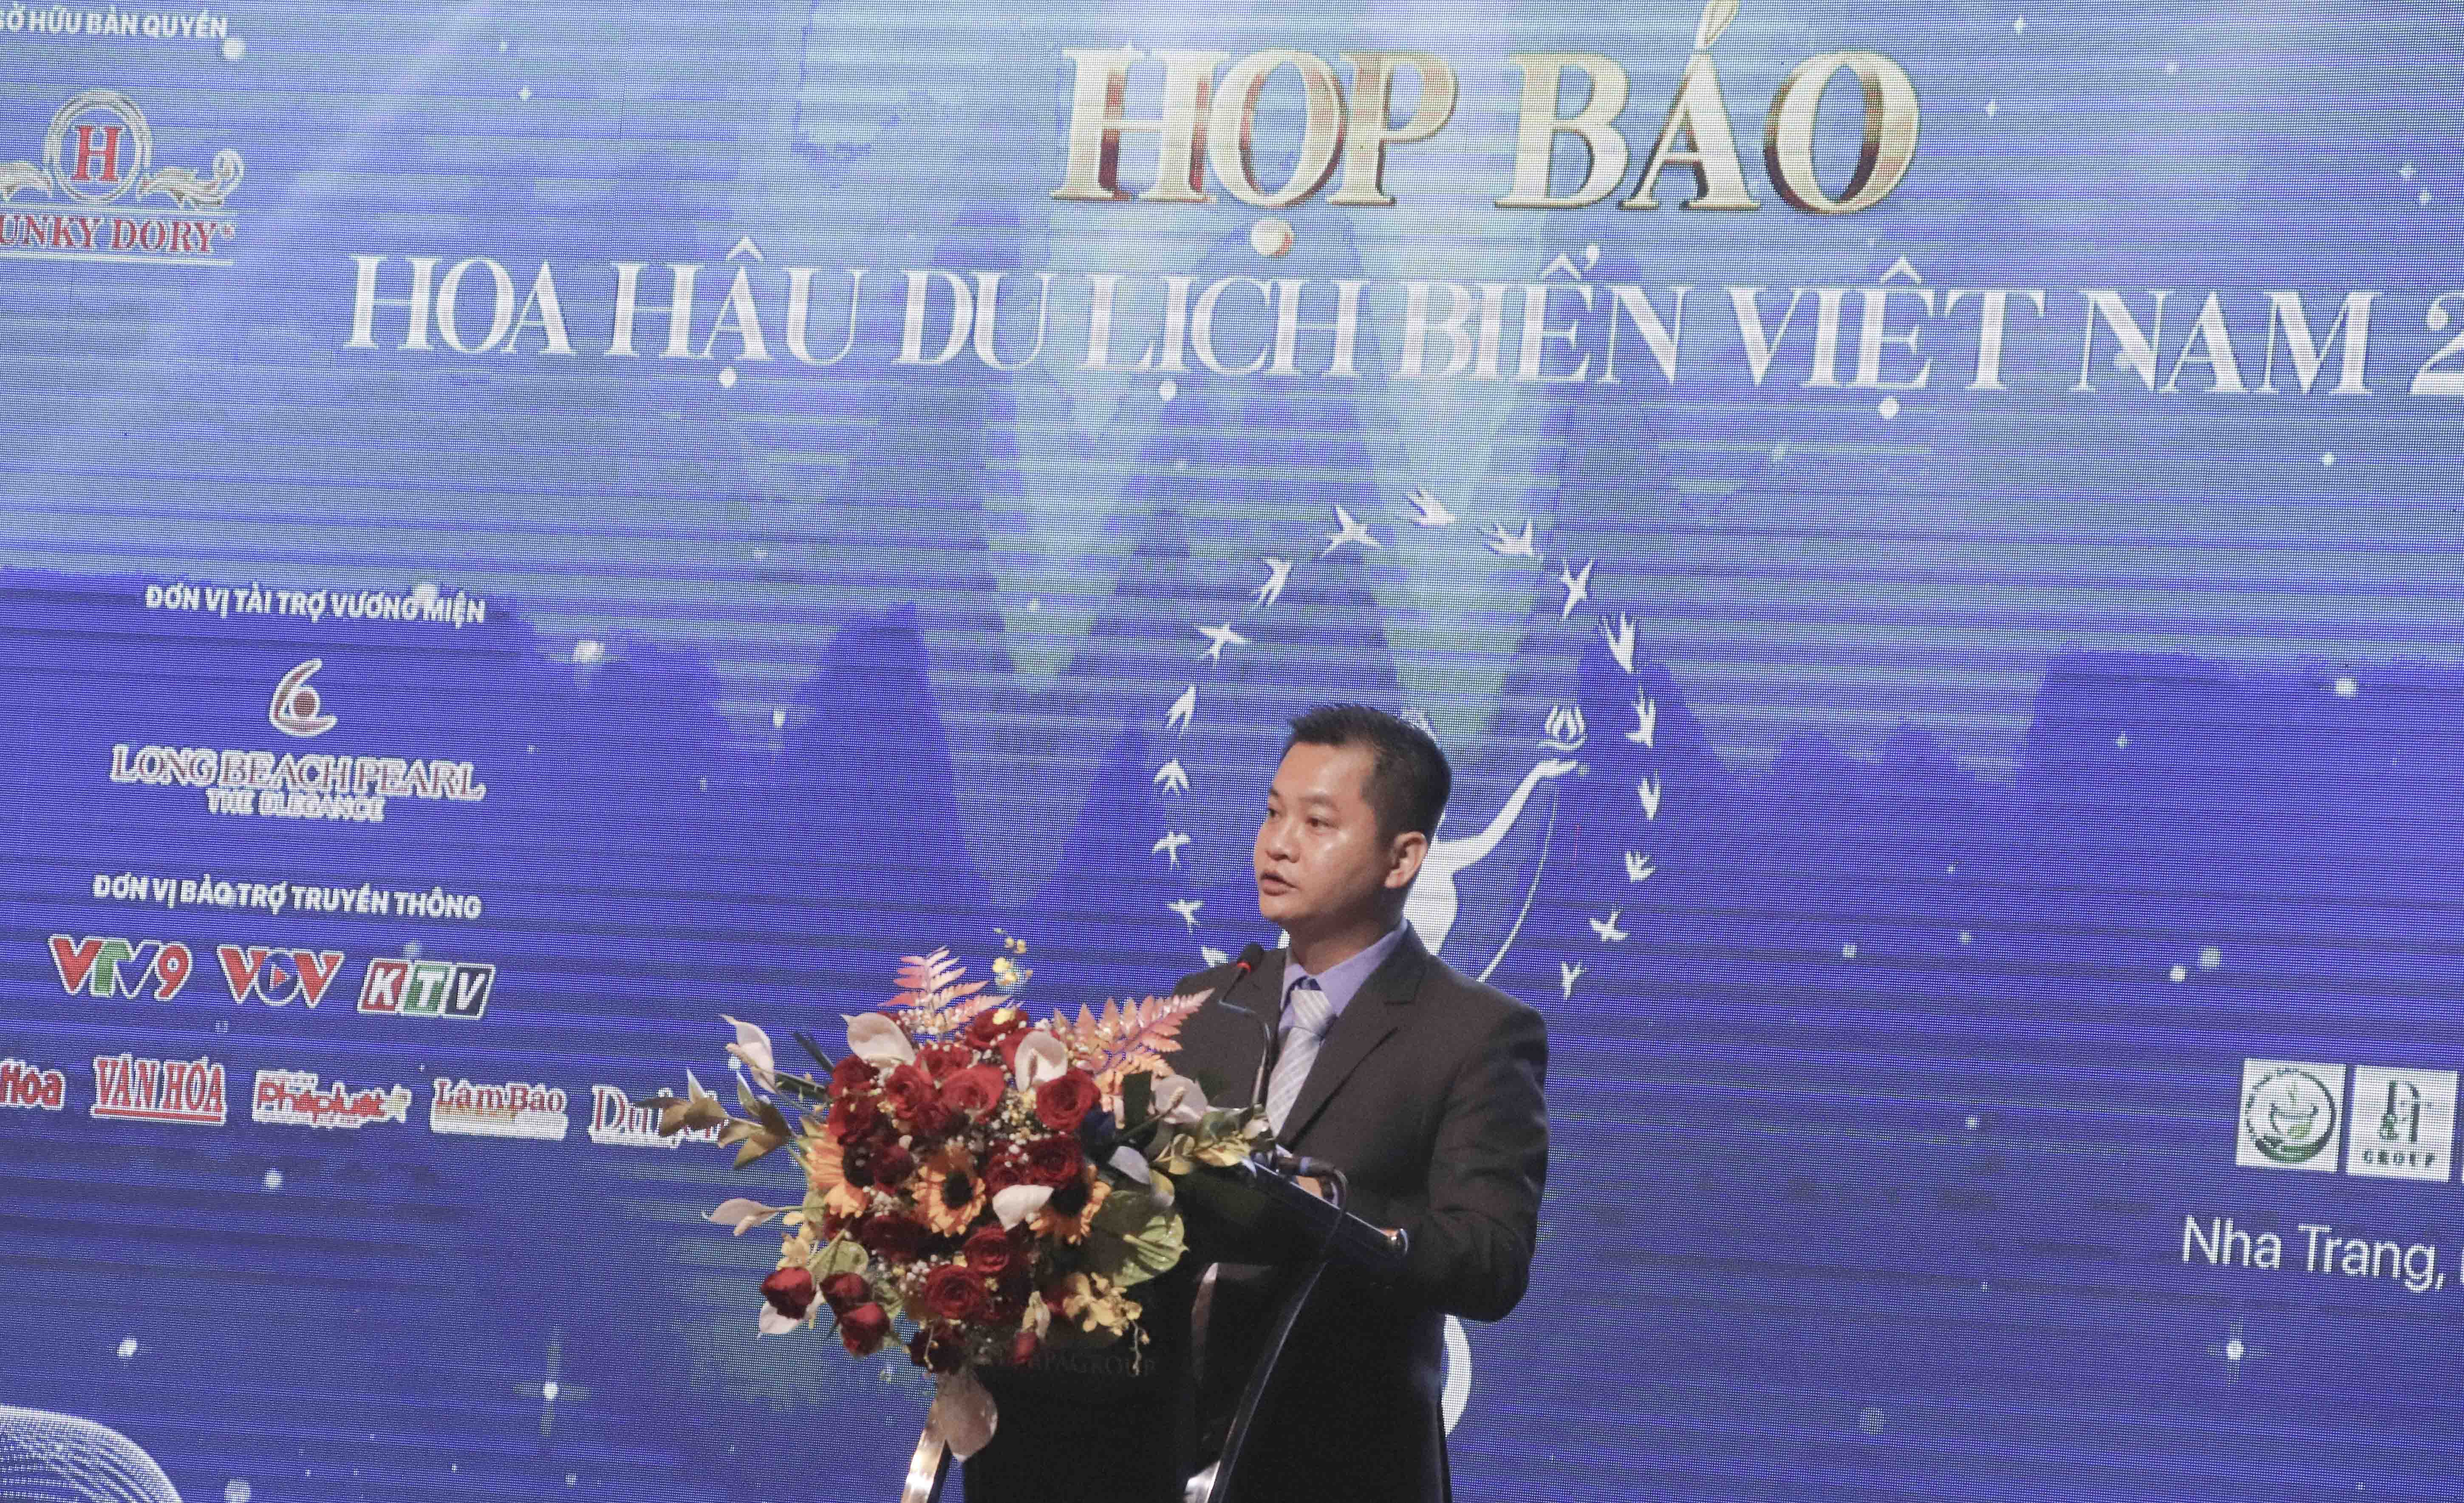 Ông Huỳnh Đức Hoà - Trưởng ban tổ chức cuộc thi phát biểu tại buổi họp báo.